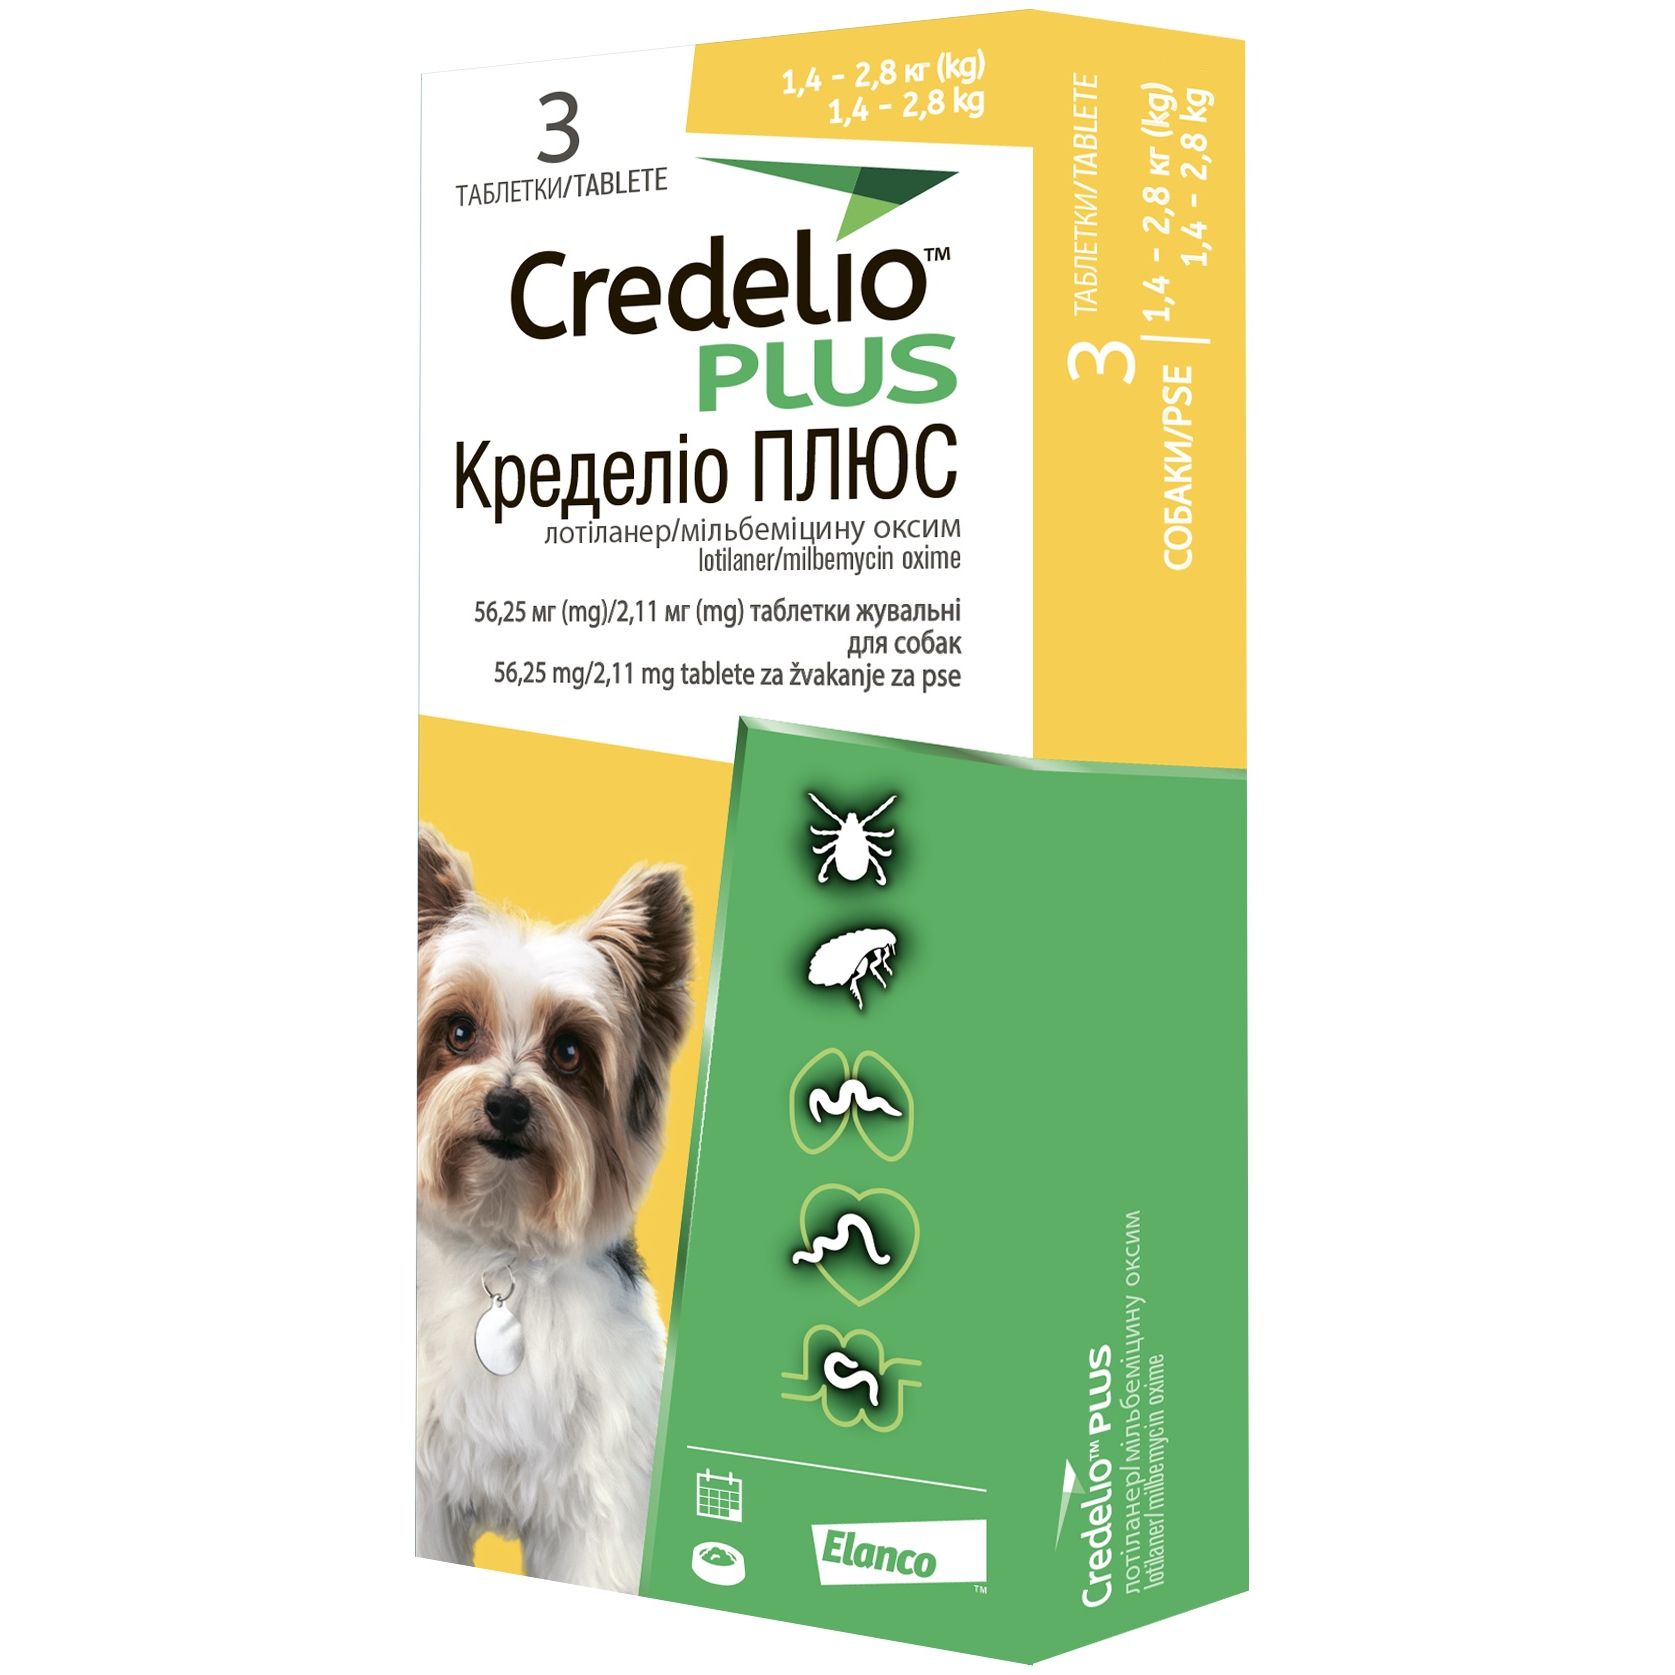 Противопаразитарные таблетки для собак Credelio Plus от блох, клещей и гельминтов 1.4-2.8 кг 3 шт. - фото 1